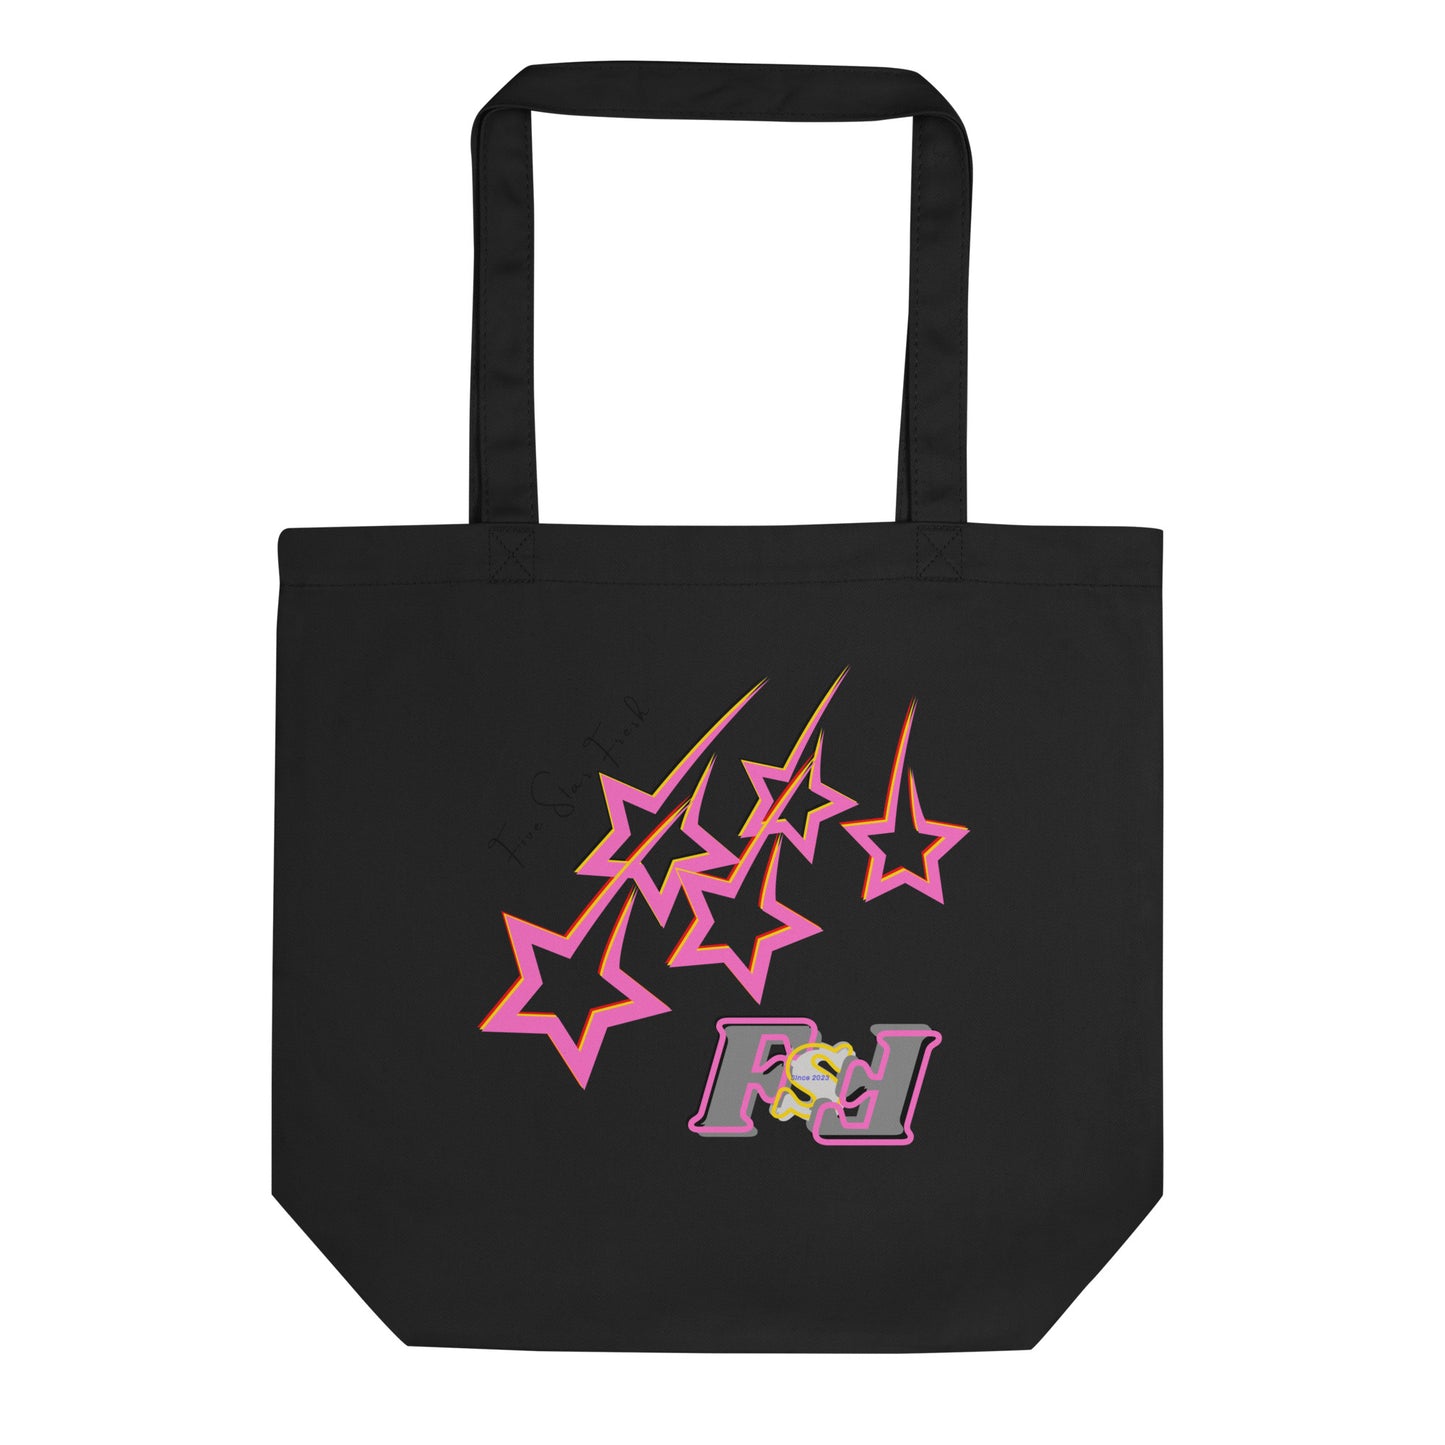 'Pink' Shooting Star - Five Star Fresh Eco Tote Bag